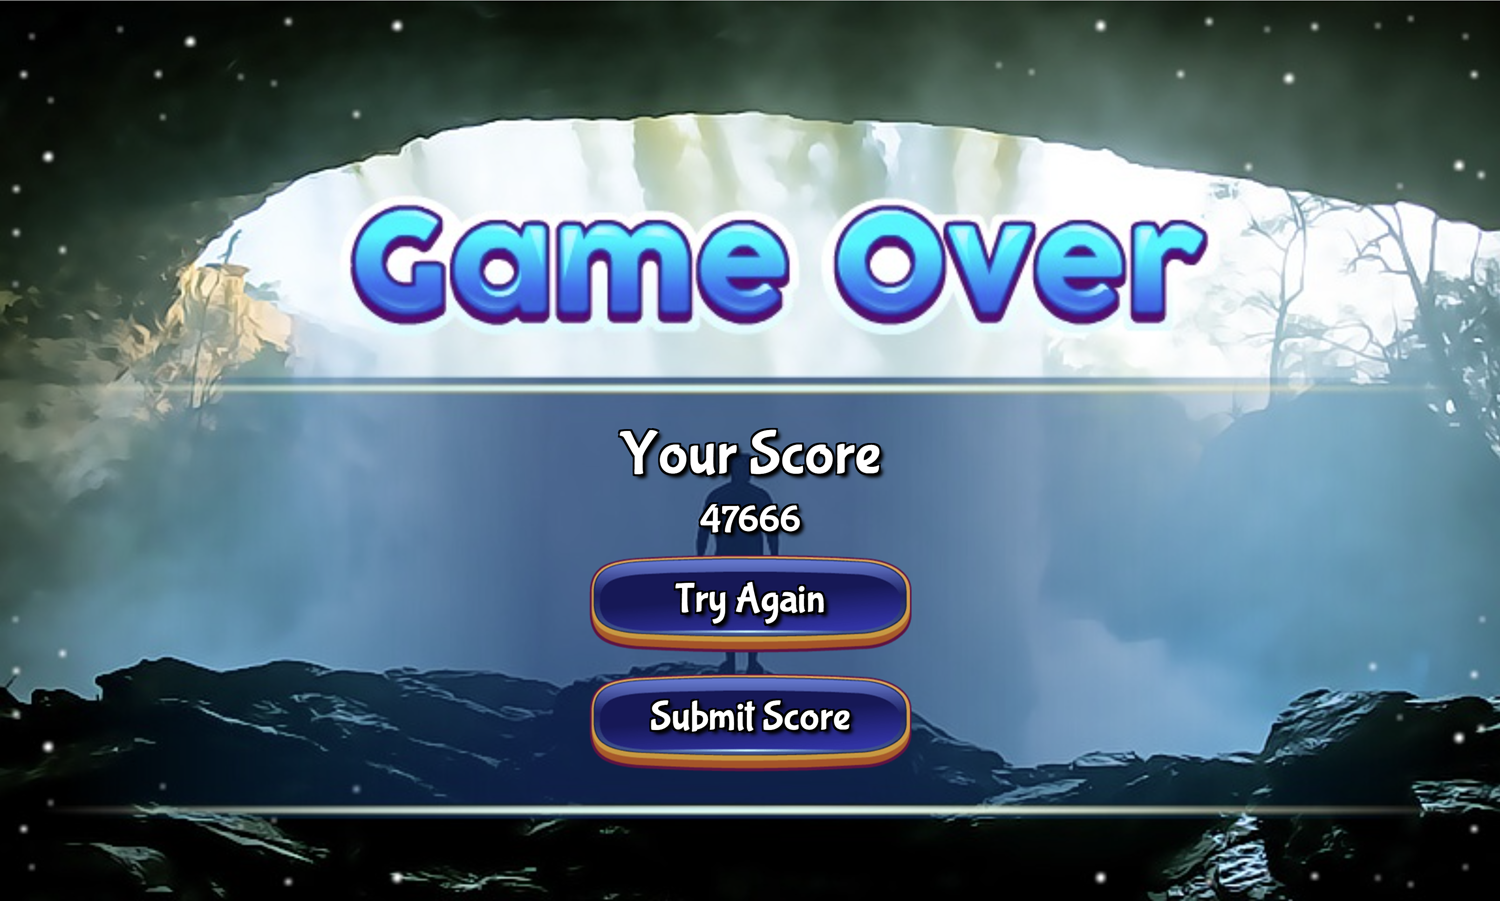 Waterfall Hidden Stars Game Over Screen Screenshot.